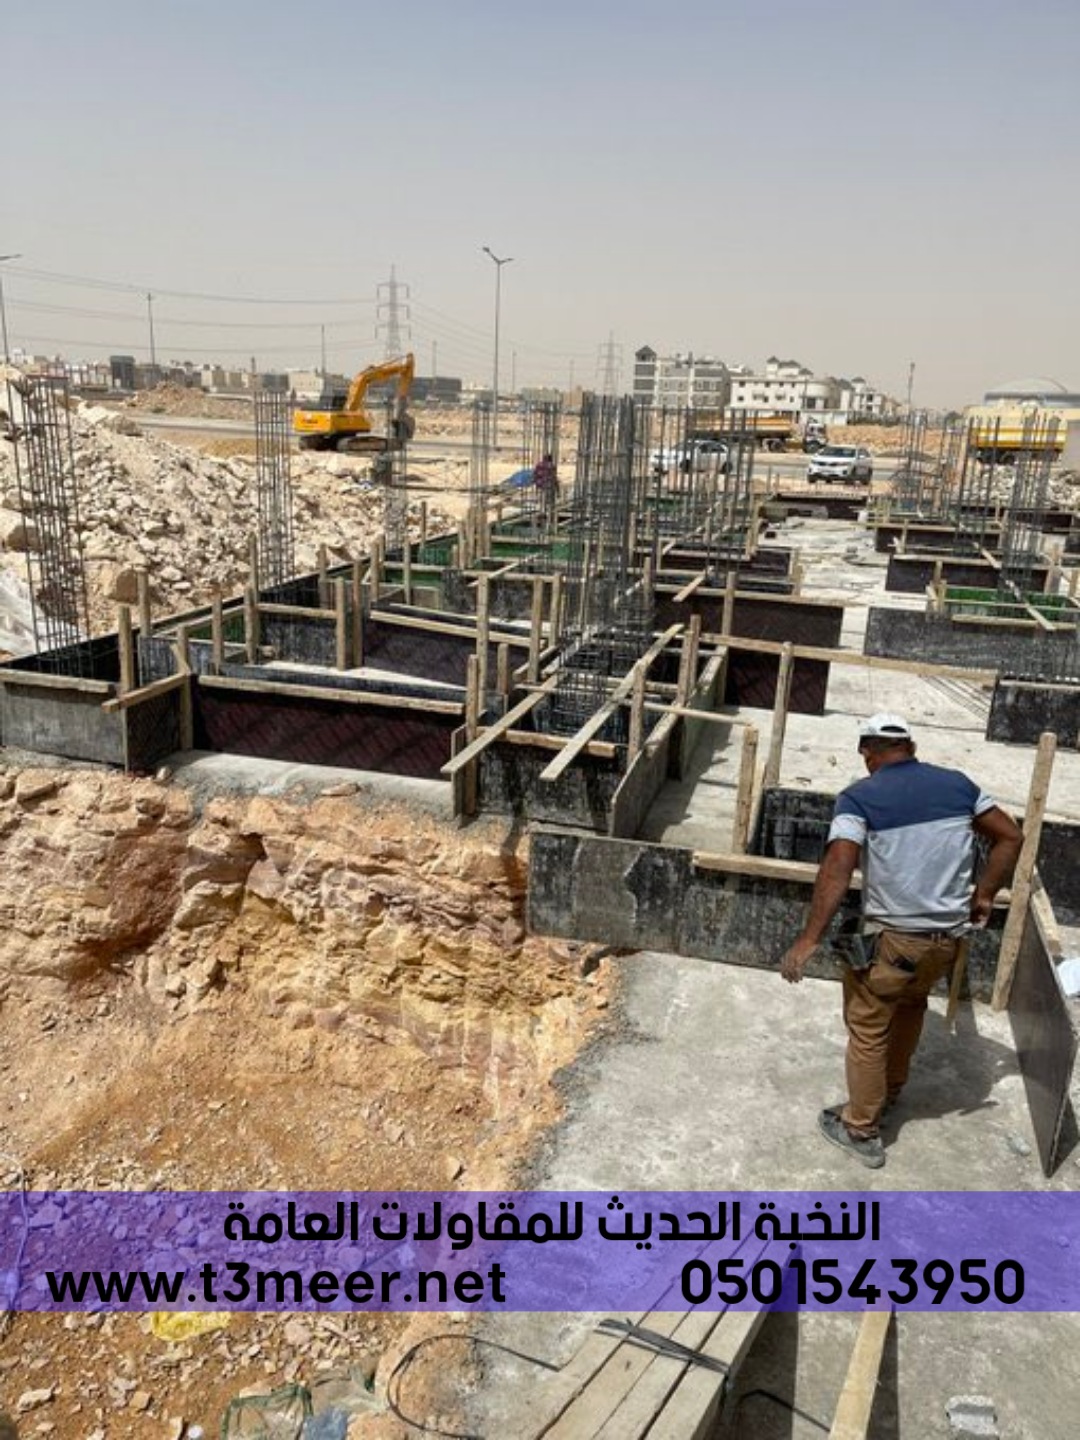 تشطيب منازل و بناء عظم في الرياض , 0501543950 P_2431imyfw9